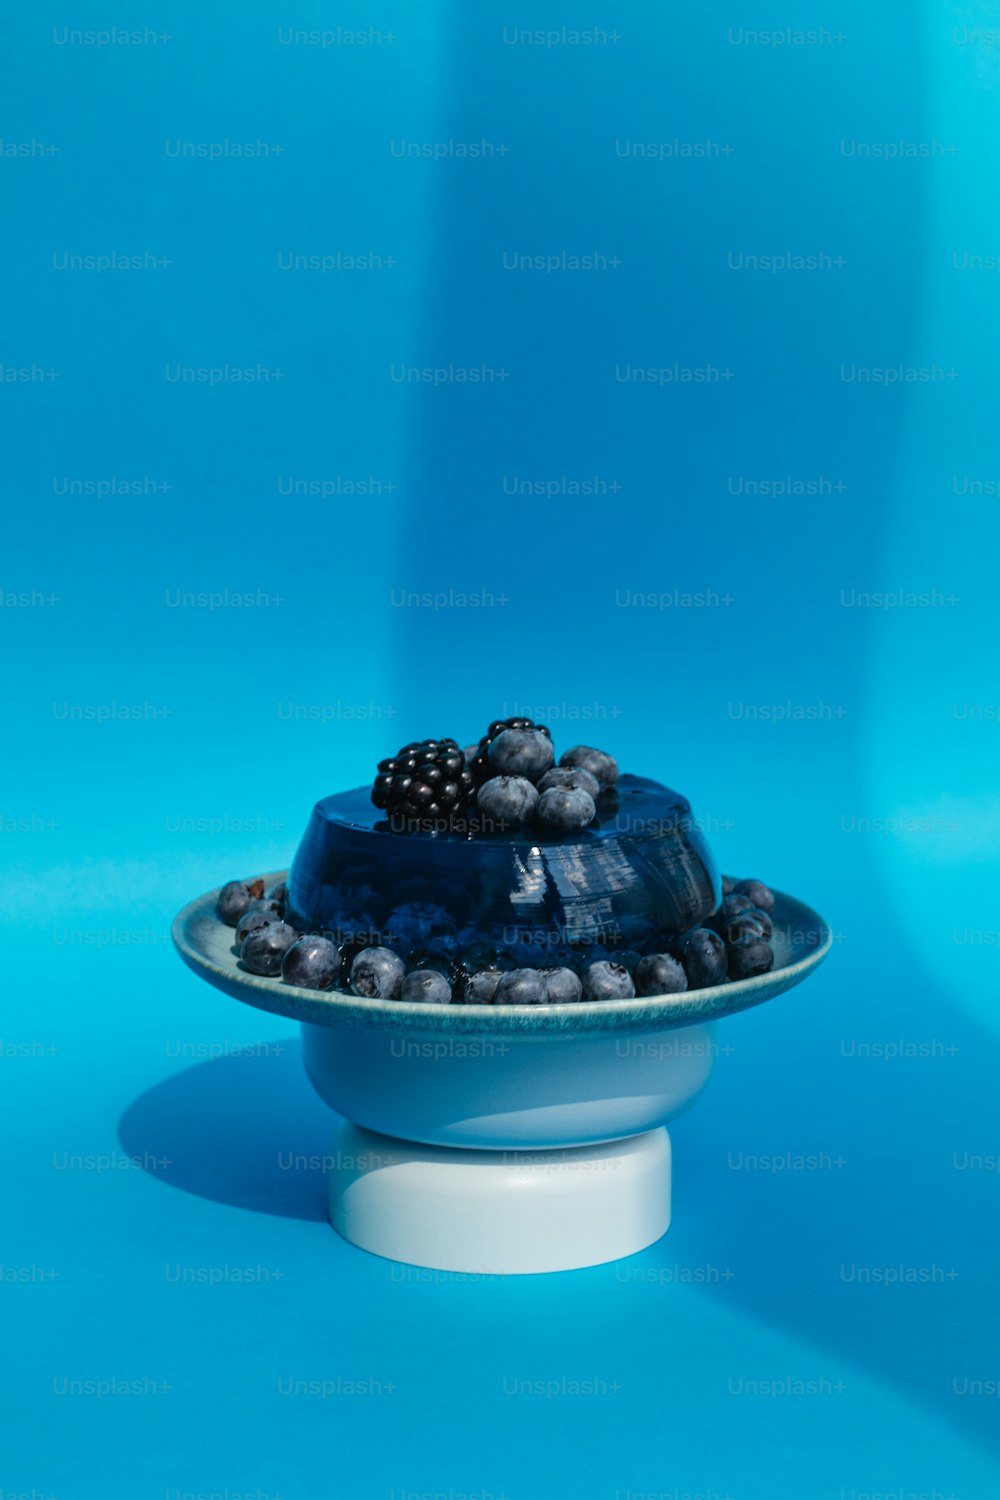 파란 접시 위에 파란 케이크가 놓여 있다